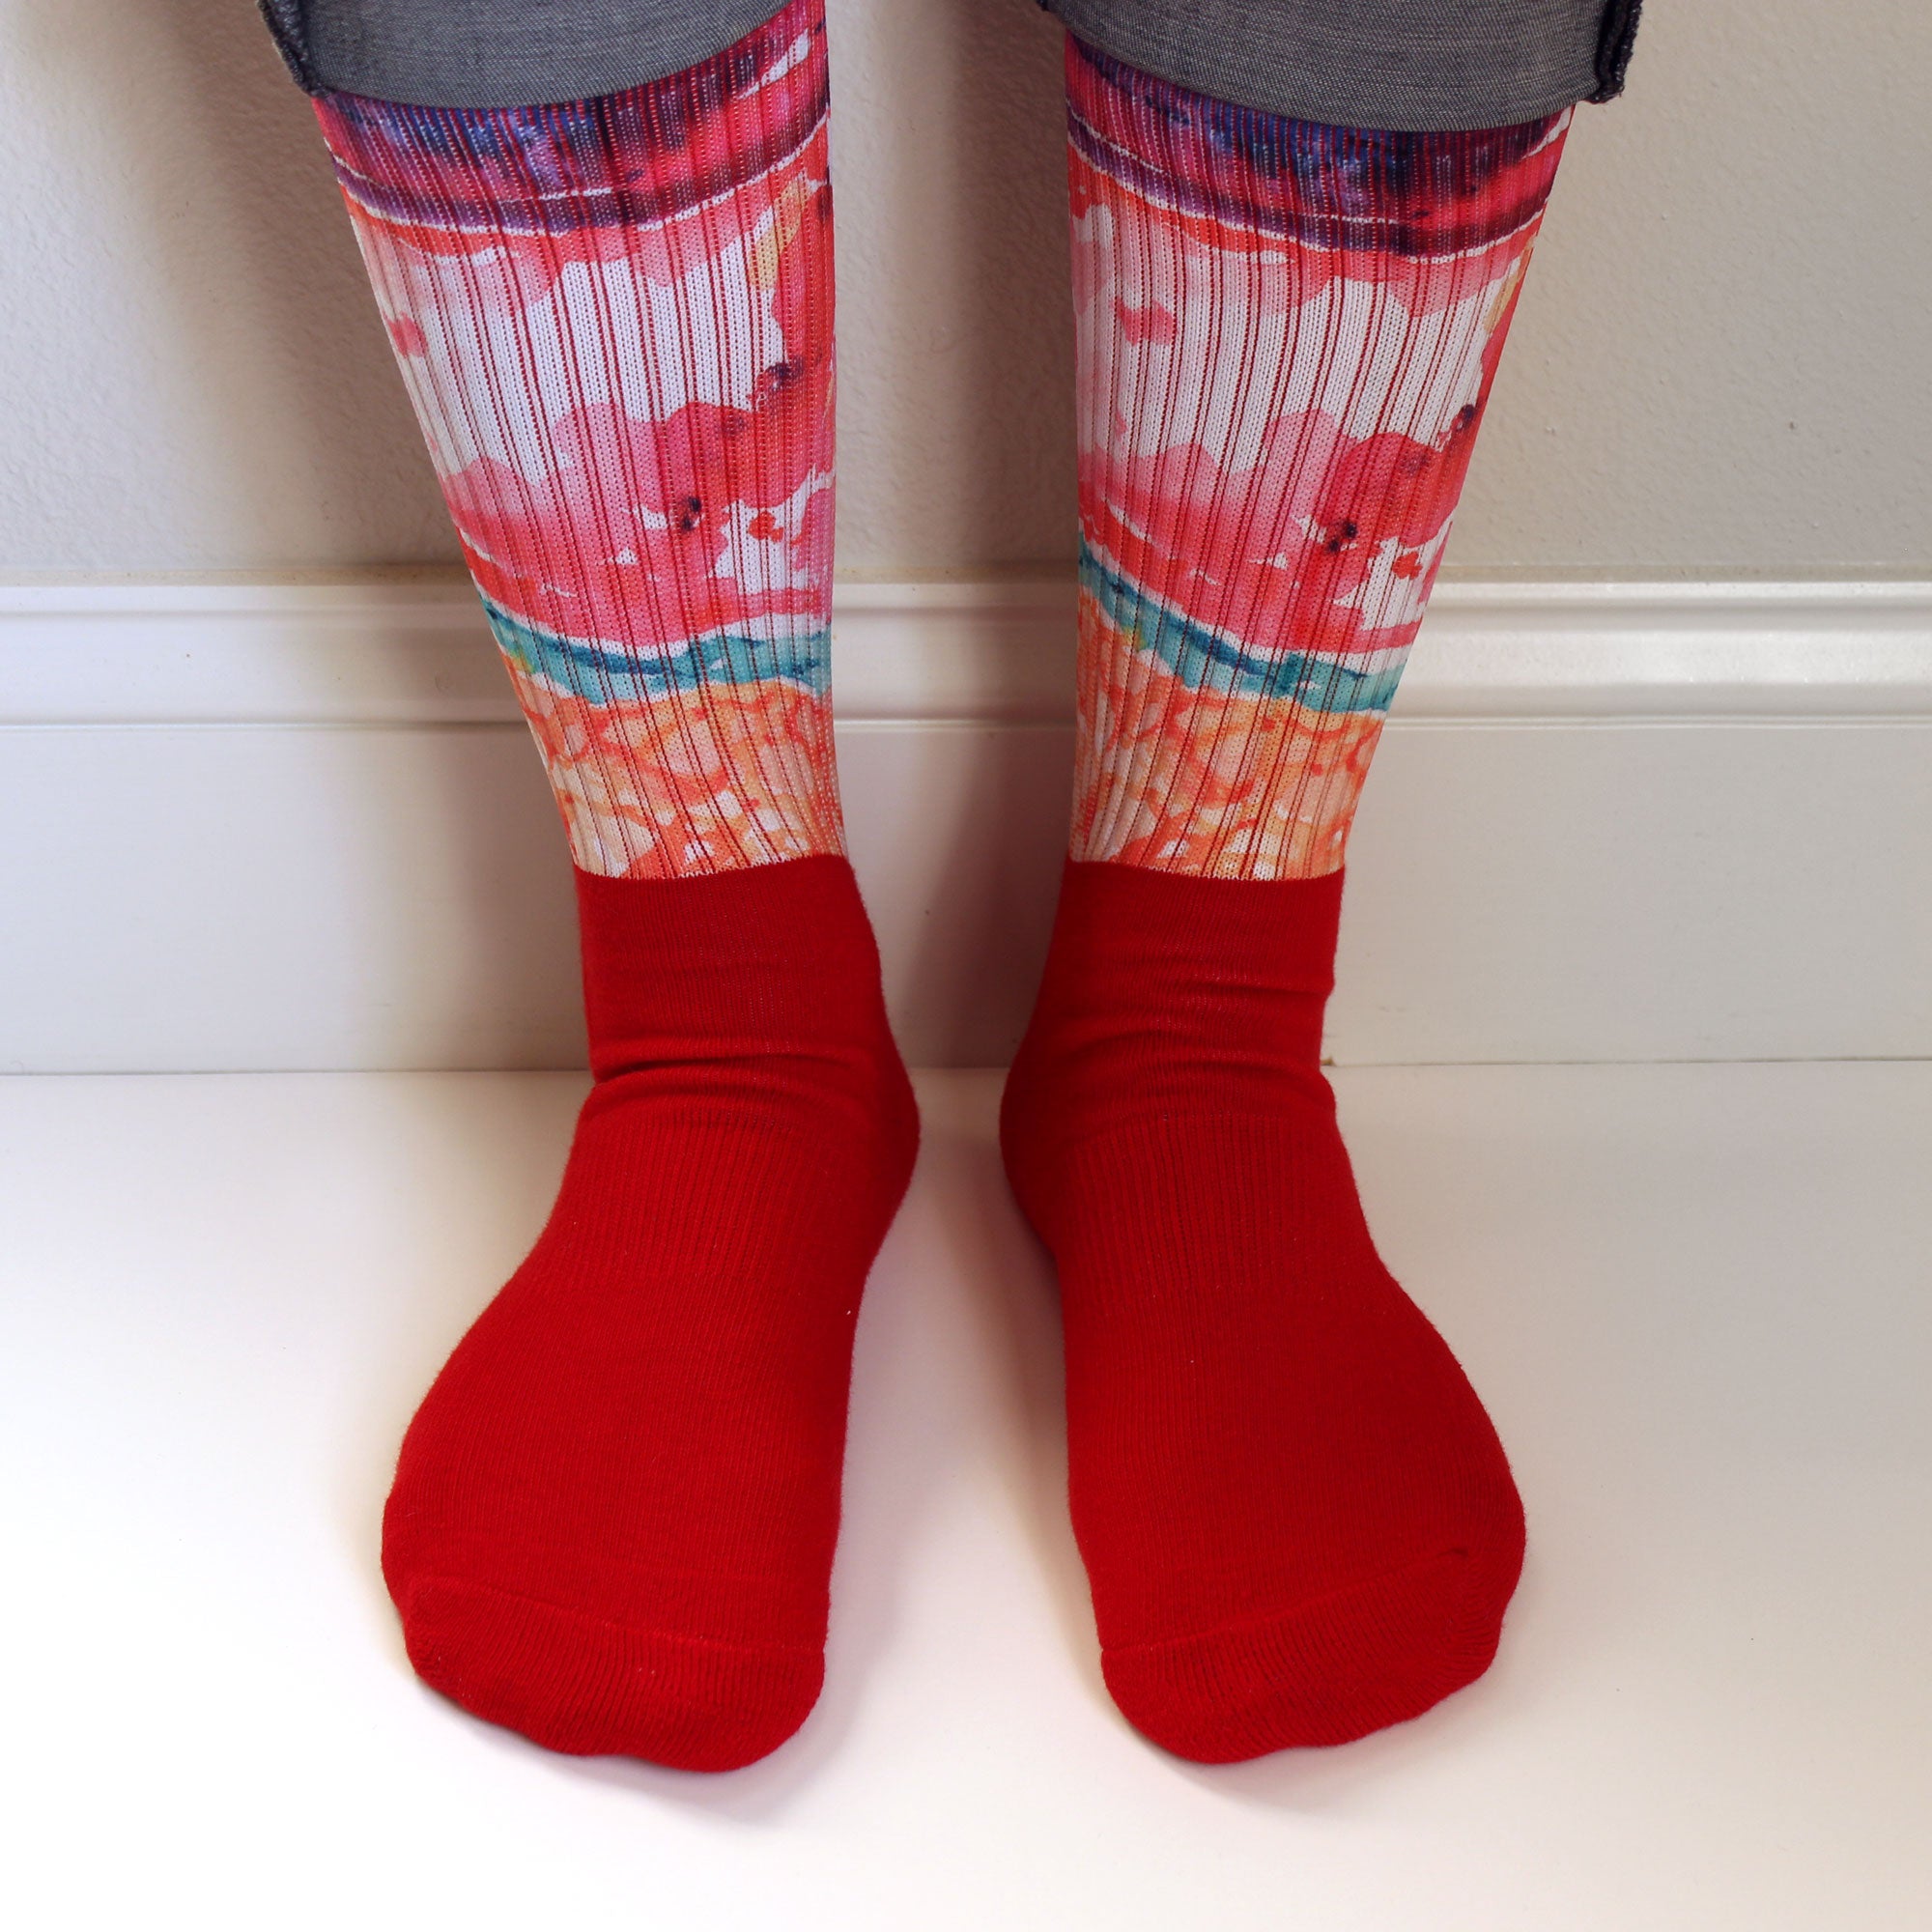 Meninges Anatomy Inspired Socks